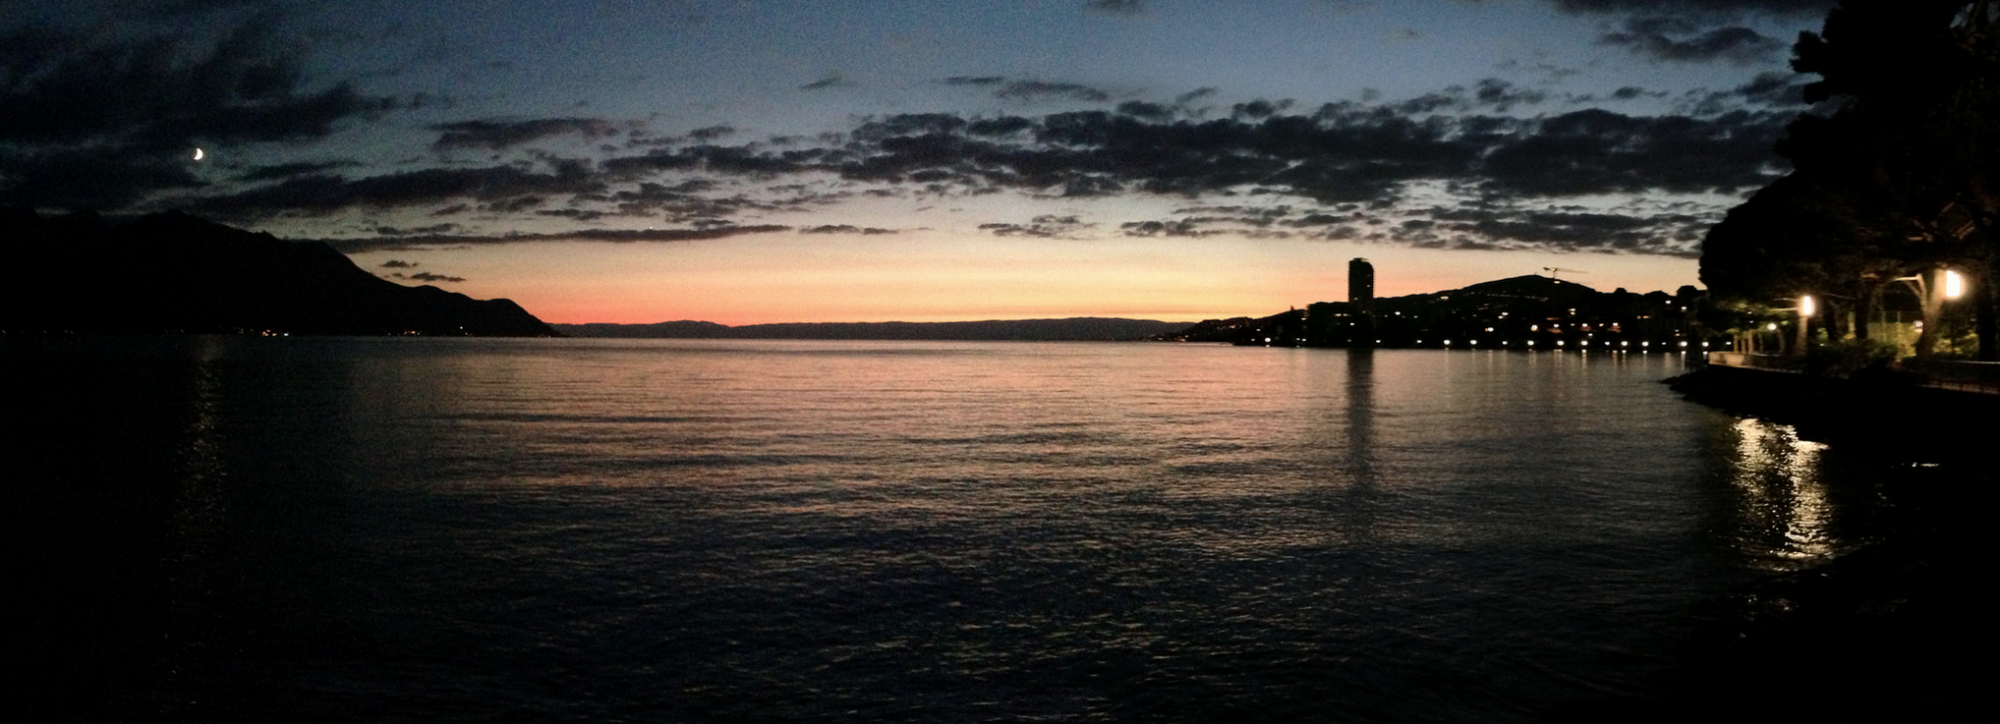 Sunset Lake Geneva, Switzerland